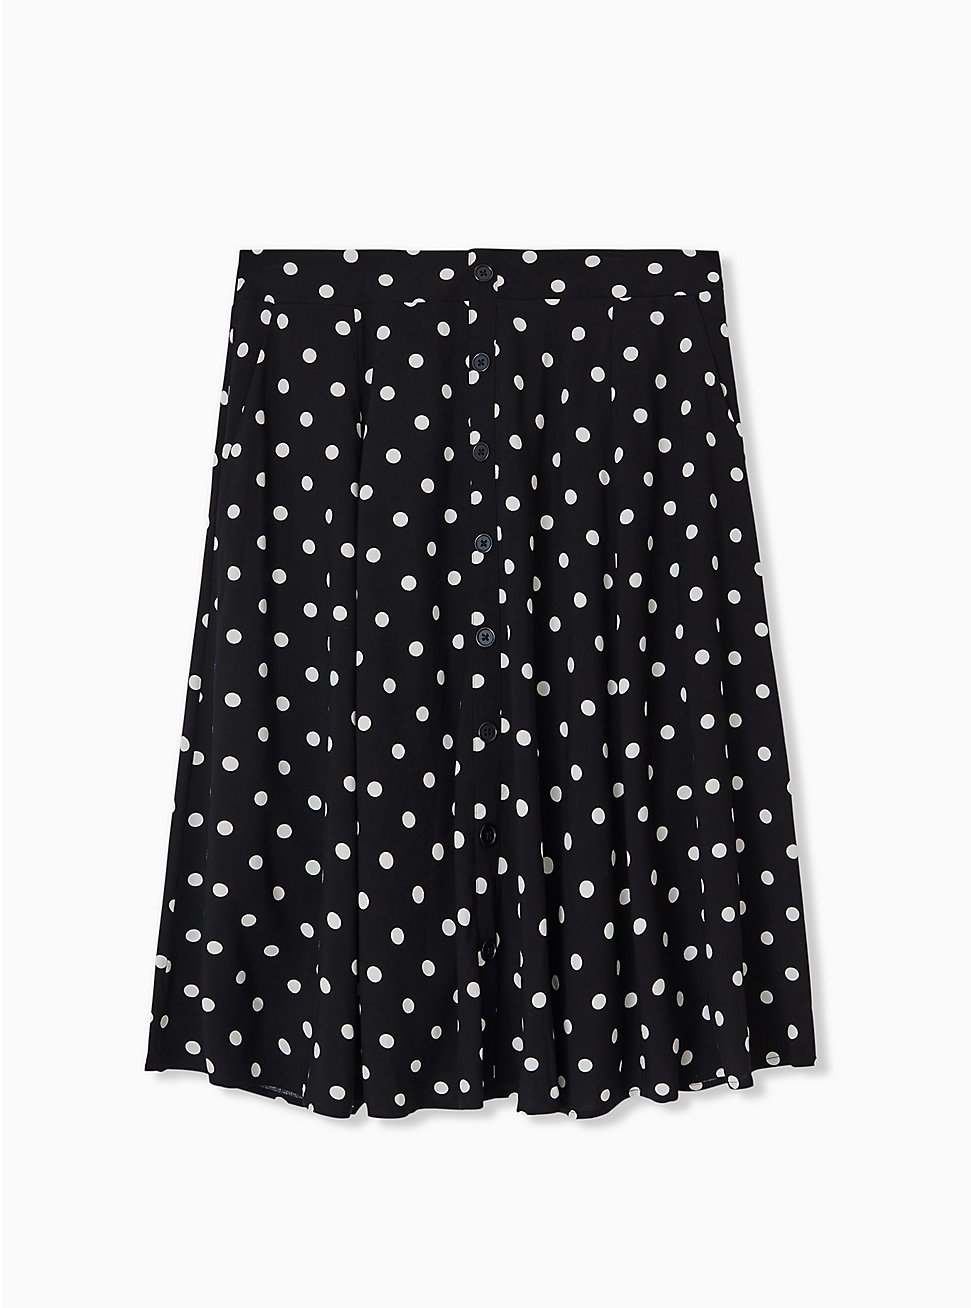 Plus Size - Black & White Polka Dot Challis Button Midi Skirt - Torrid